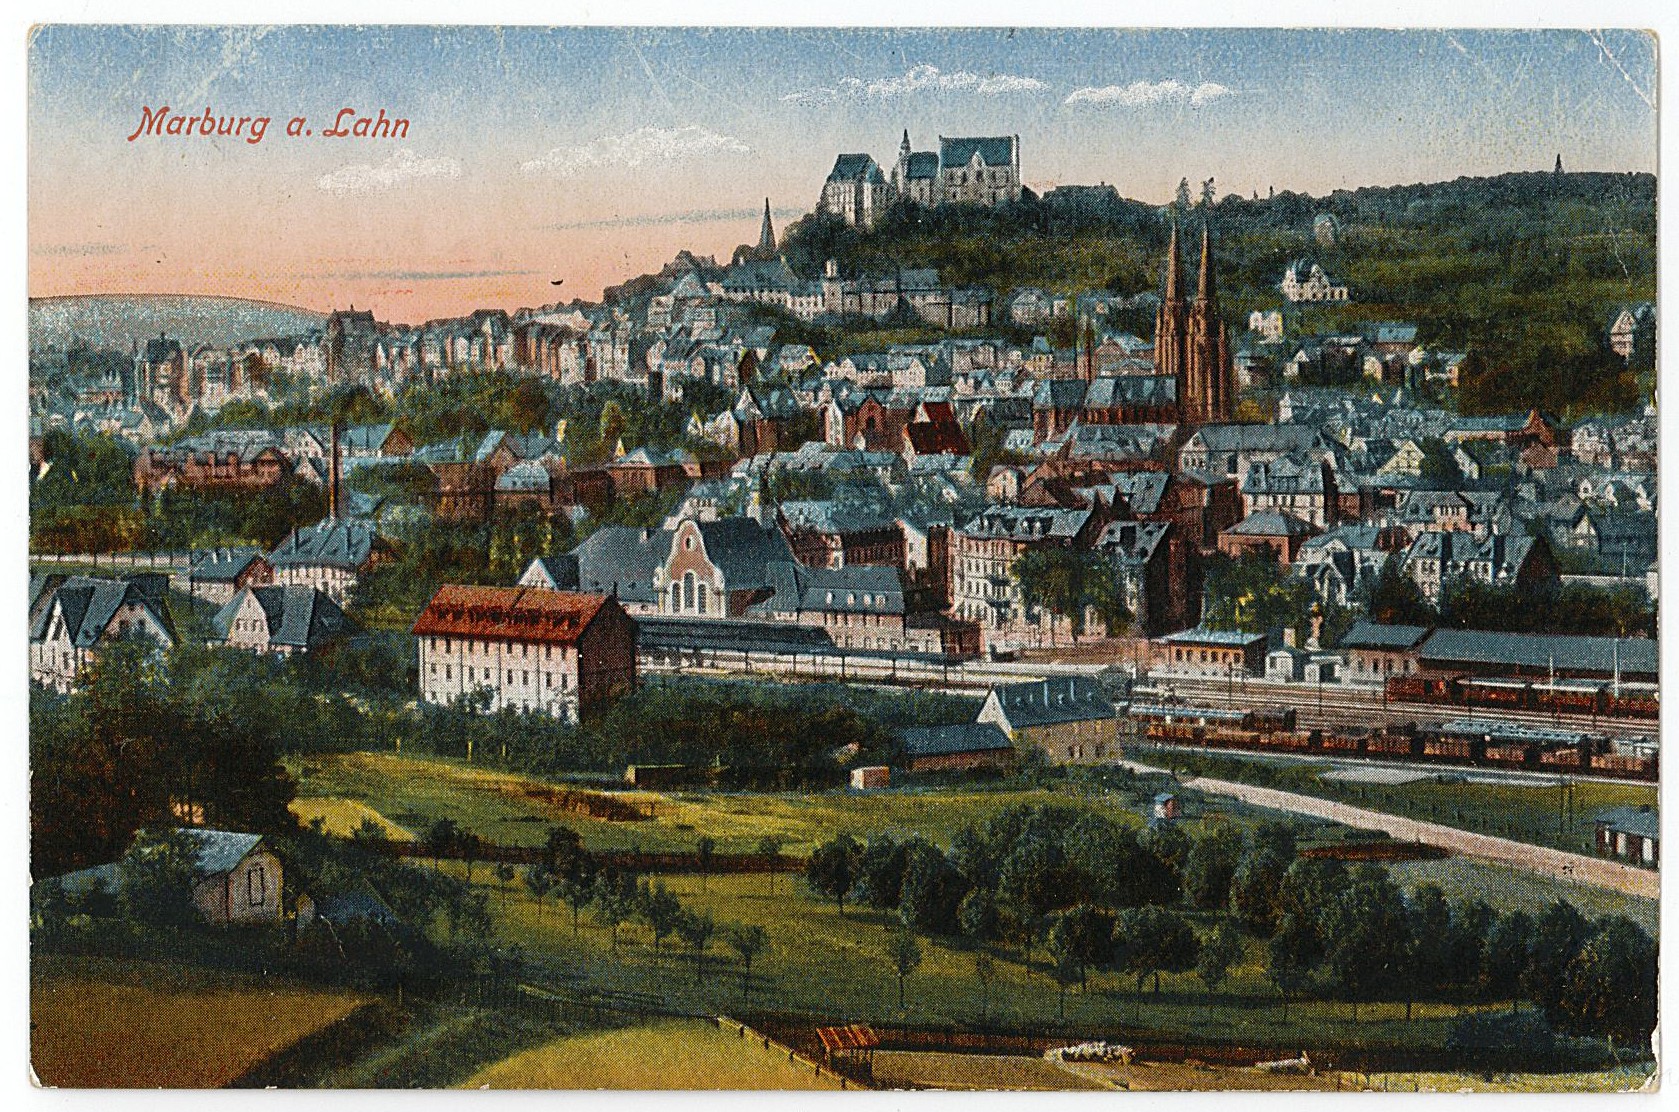 Postkarte von Erich Otto an seinen Vater Hermann Otto, 16.01.1918 (Museum Wolmirstedt RR-F)